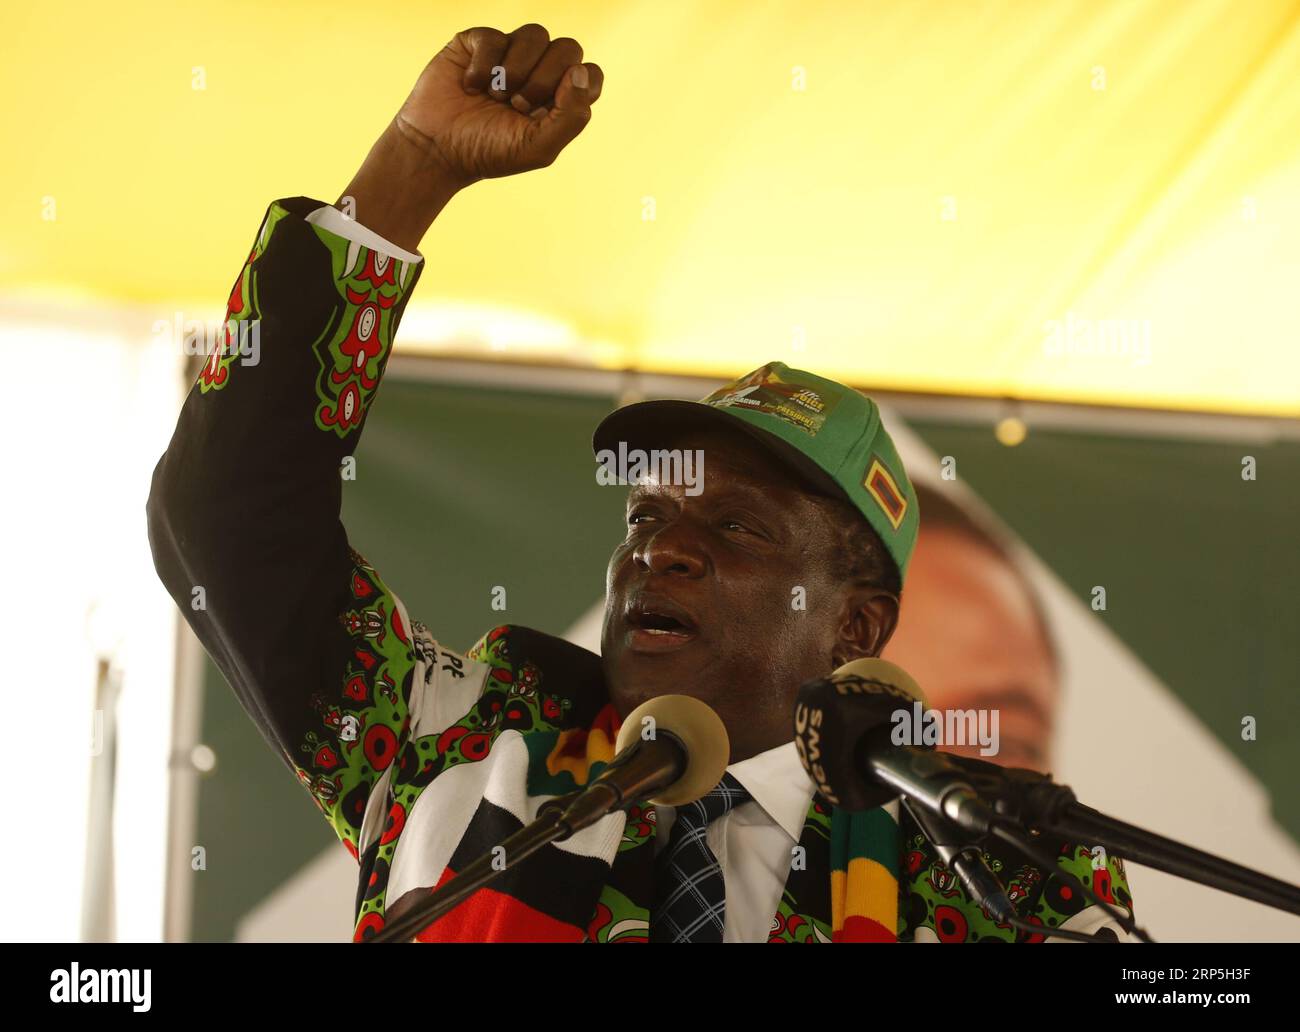 (181215) -- ESIGODINI, 15 décembre 2018 -- le président zimbabwéen Emmerson Mnangagwa s'adresse à la conférence annuelle du parti ZANU-PF au pouvoir à Esigodini, Matabeleland Sud, Zimbabwe, le 14 décembre 2018. Le président zimbabwéen Emmerson Mnangagwa a déclaré mercredi que le parti ZANU-PF au pouvoir n'avait pas l'intention d'inviter l'opposition à former un gouvernement d'unité nationale (GNU) après sa victoire retentissante aux élections tripartites de juillet 30. (lmm) ZIMBABWE-MATABELELAND SOUTH-PARTI AU POUVOIR-CONFERENCE-MNANGAGWA ShaunxJusa PUBLICATIONxNOTxINxCHN Banque D'Images